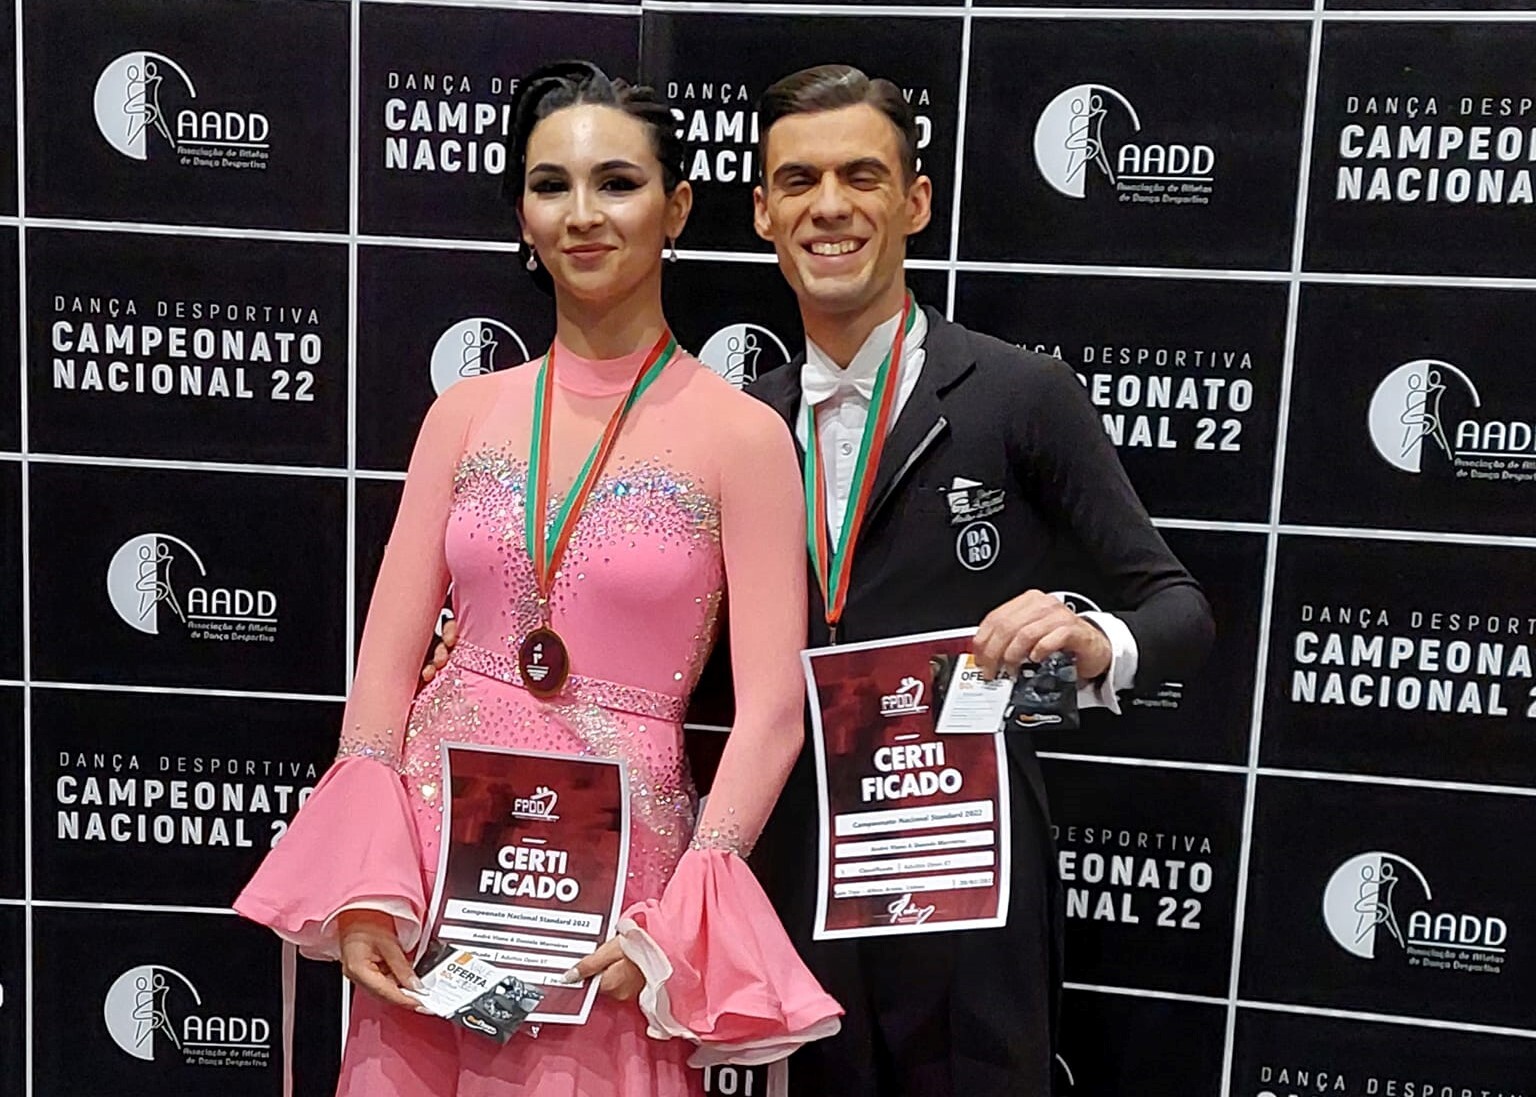 André Viana e Daniela Marreiros são Campeões Nacionais de Dança Desportiva